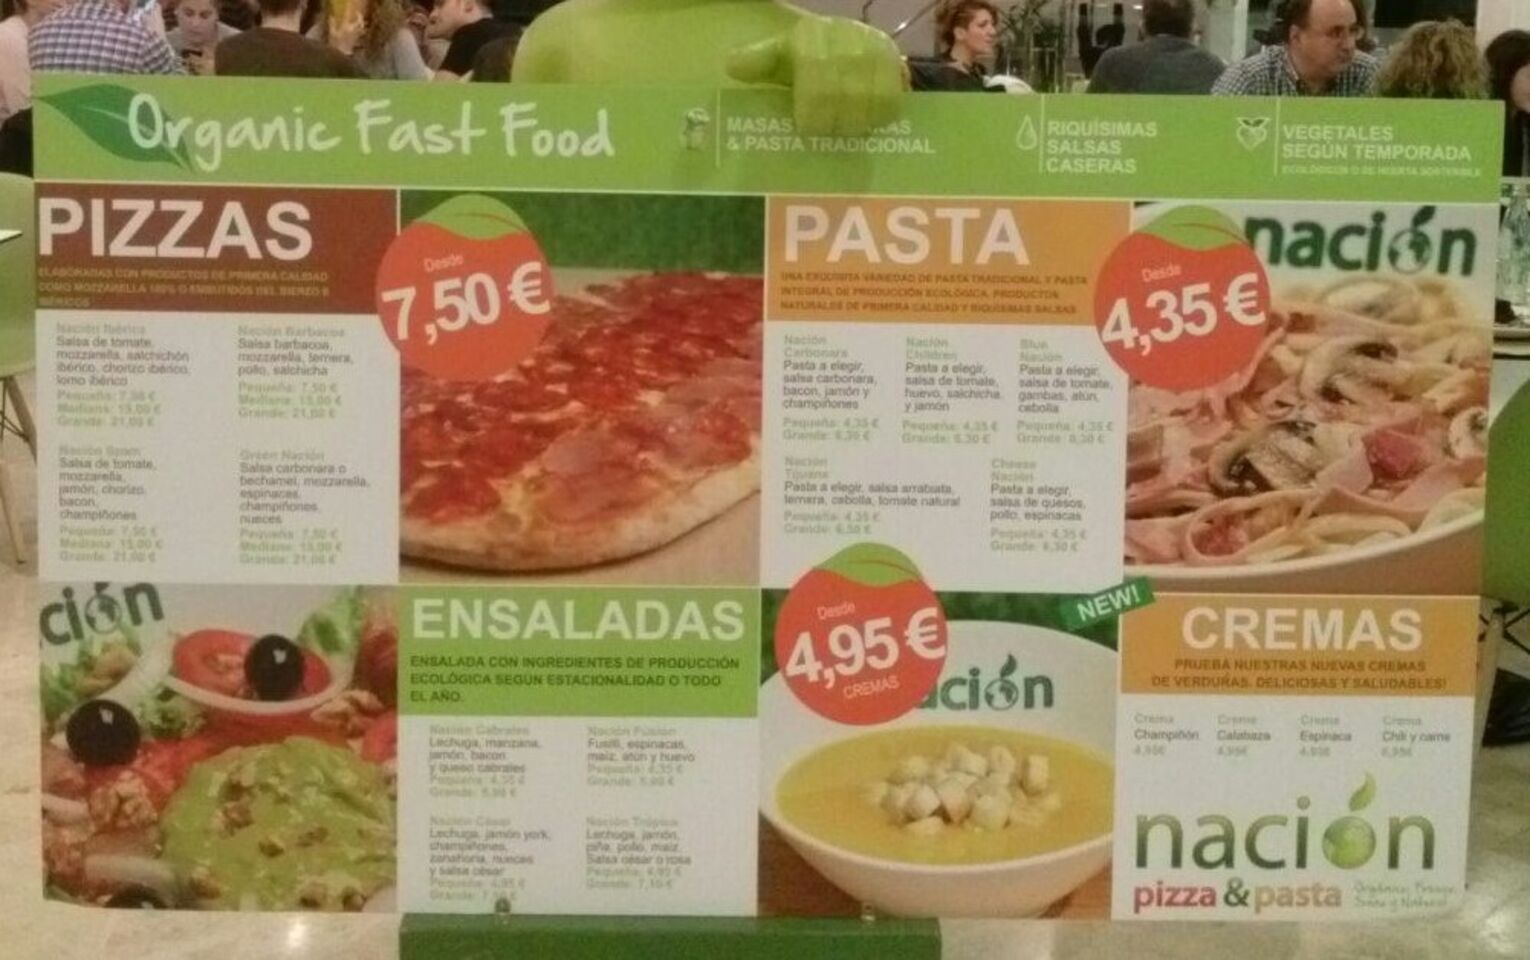 A photo of Nación Pizza & Pasta